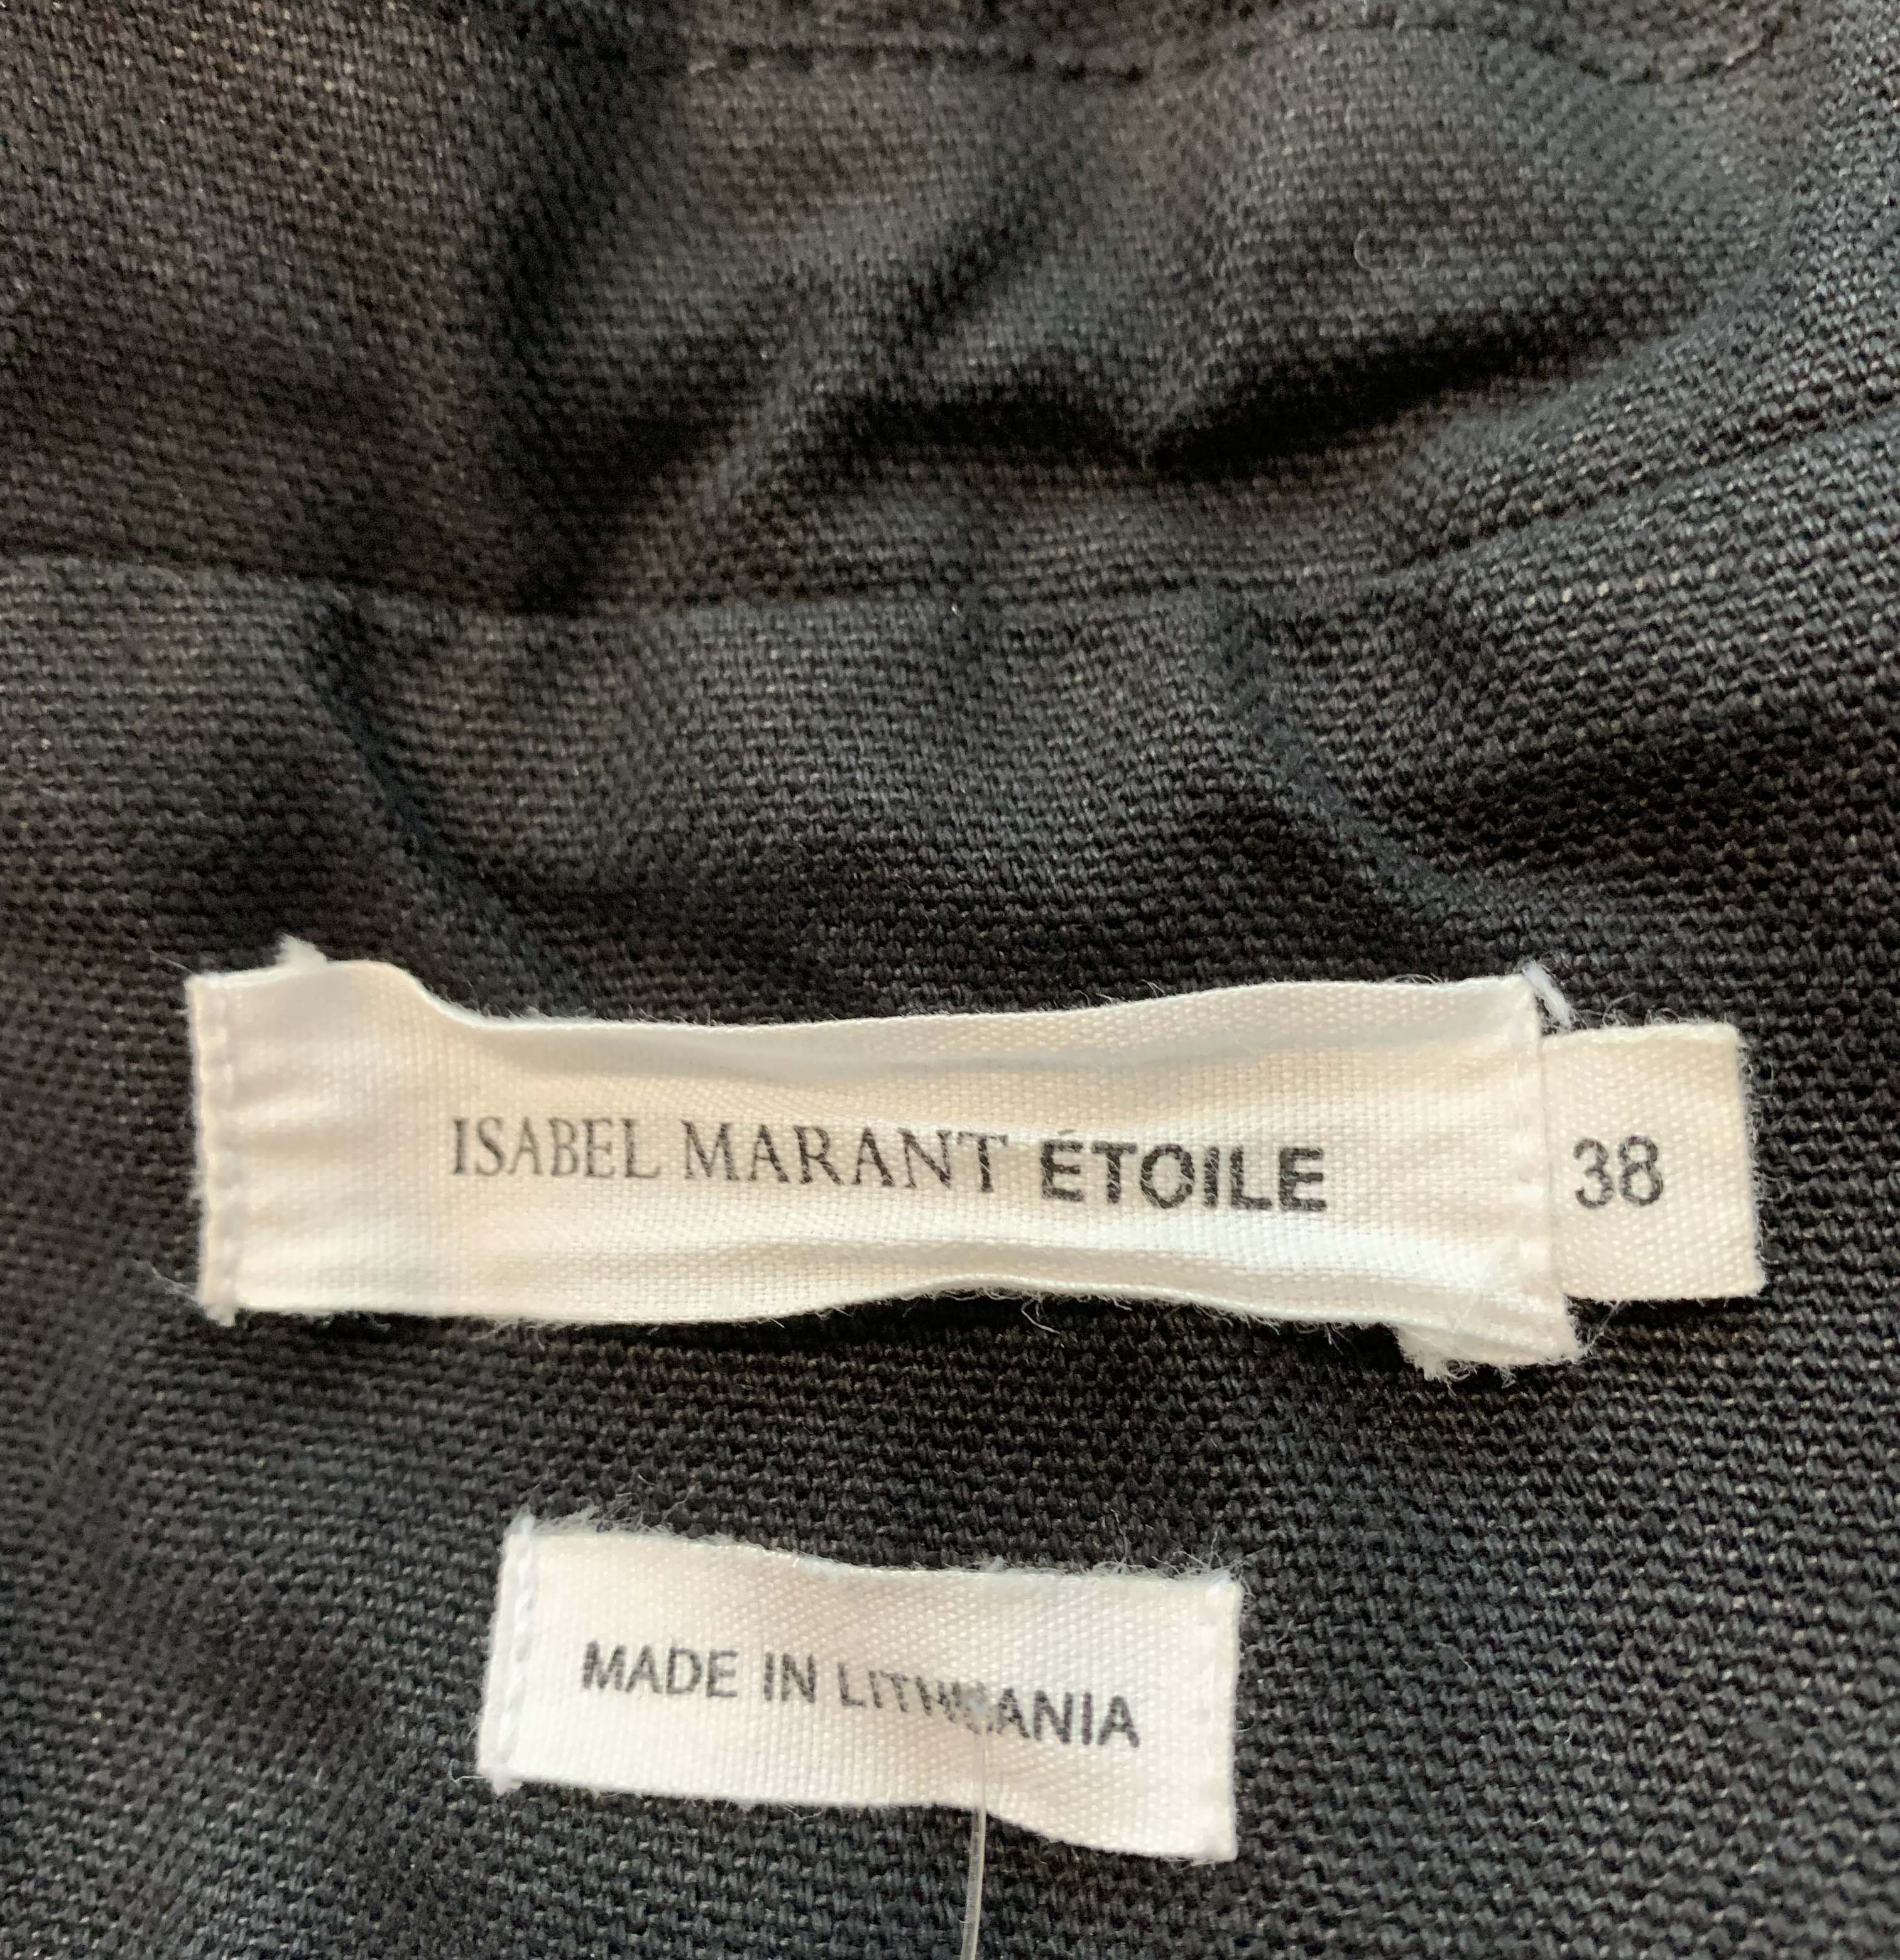 ISABEL MARANT ETOILE Women's Jacket